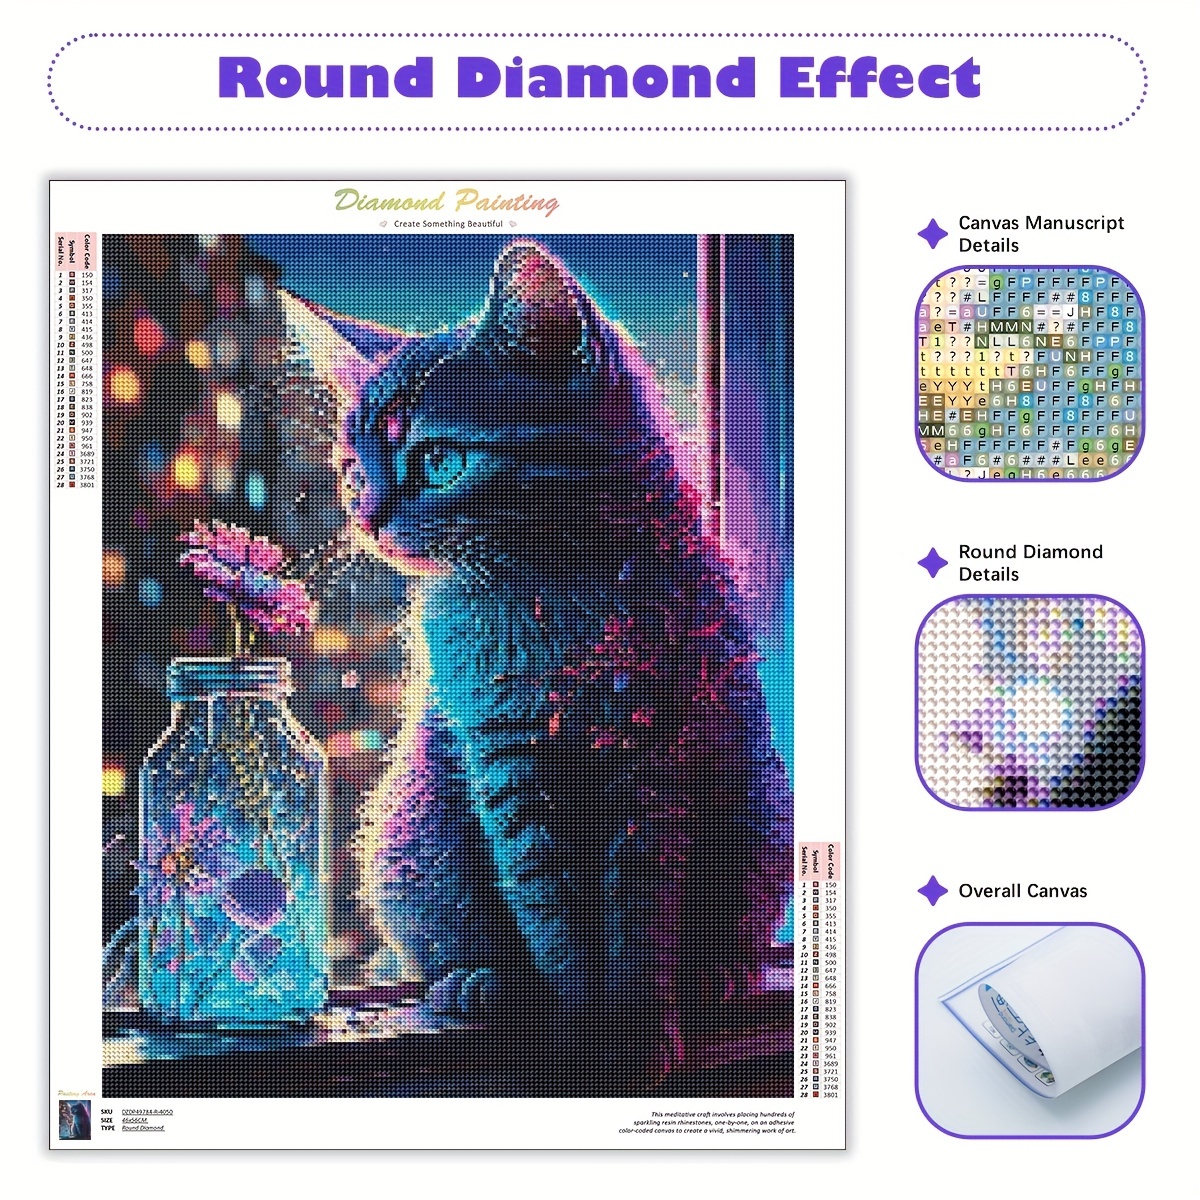 5d Diy Diamond Painting Cat Diamond Embroidery Animal - Temu